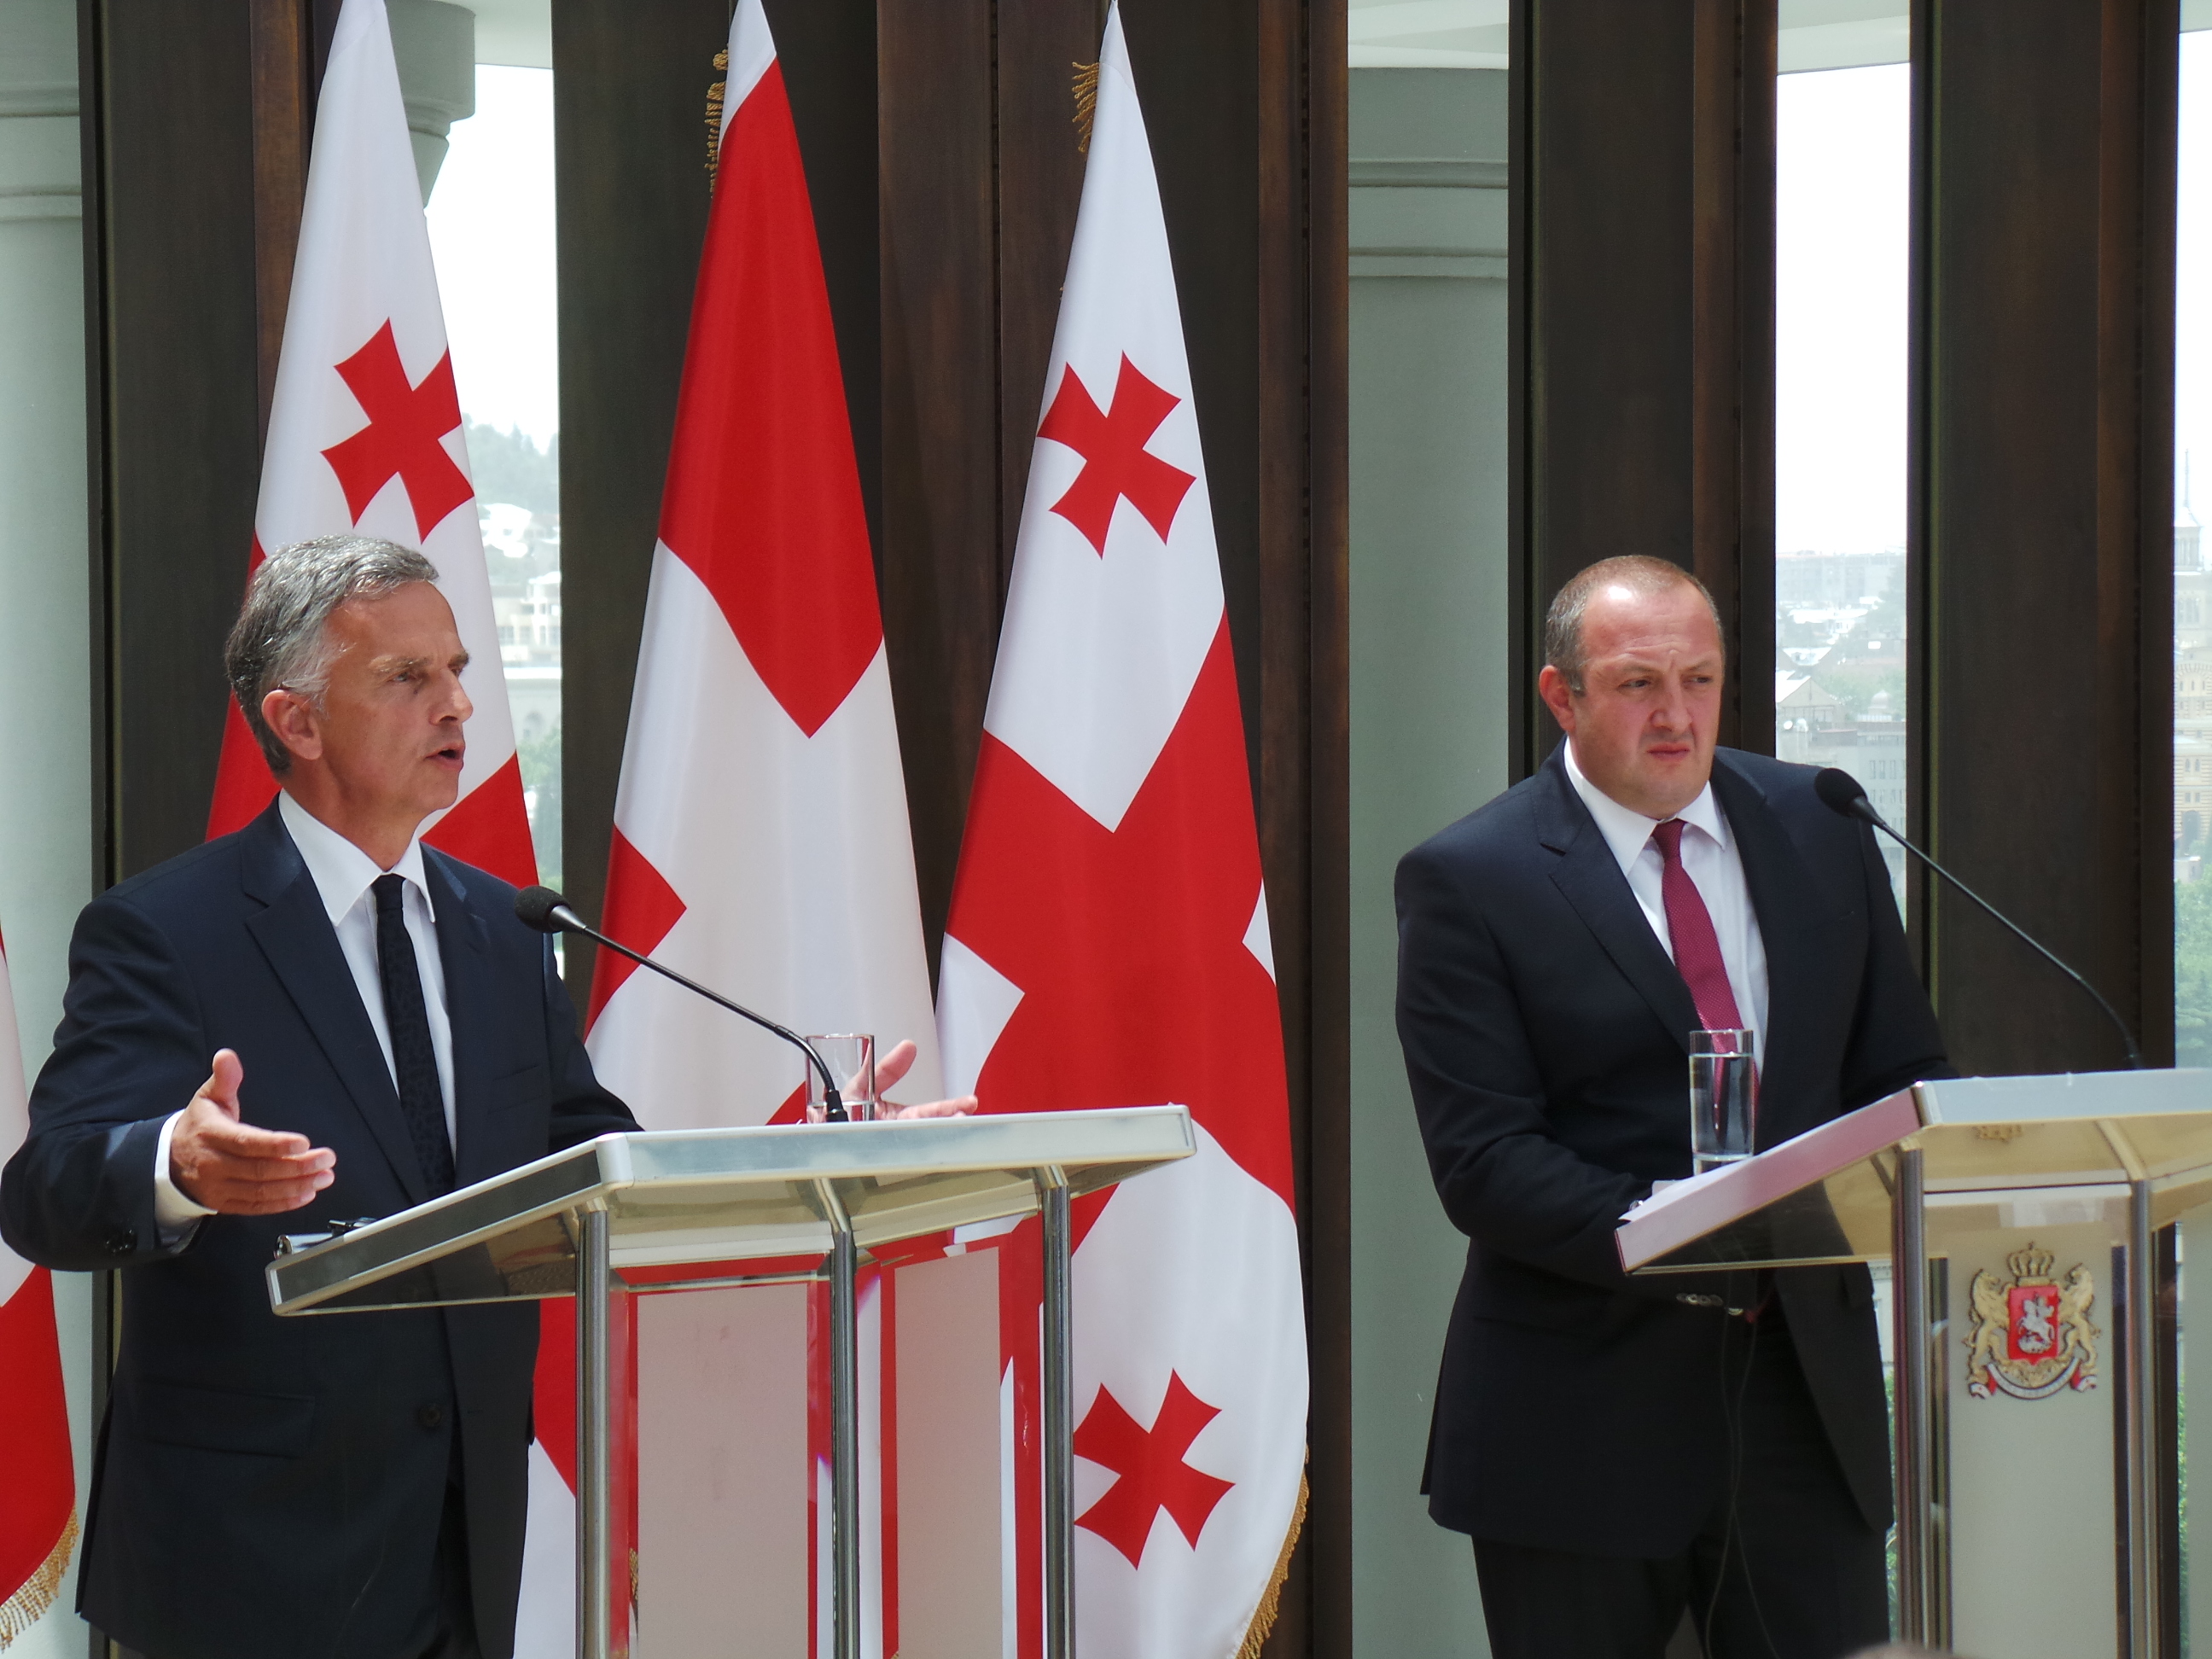 Bundespräsident Didier Burkhalter und der georgische Präsident Giorgi Margvelashvili bei der Pressekonferenz.